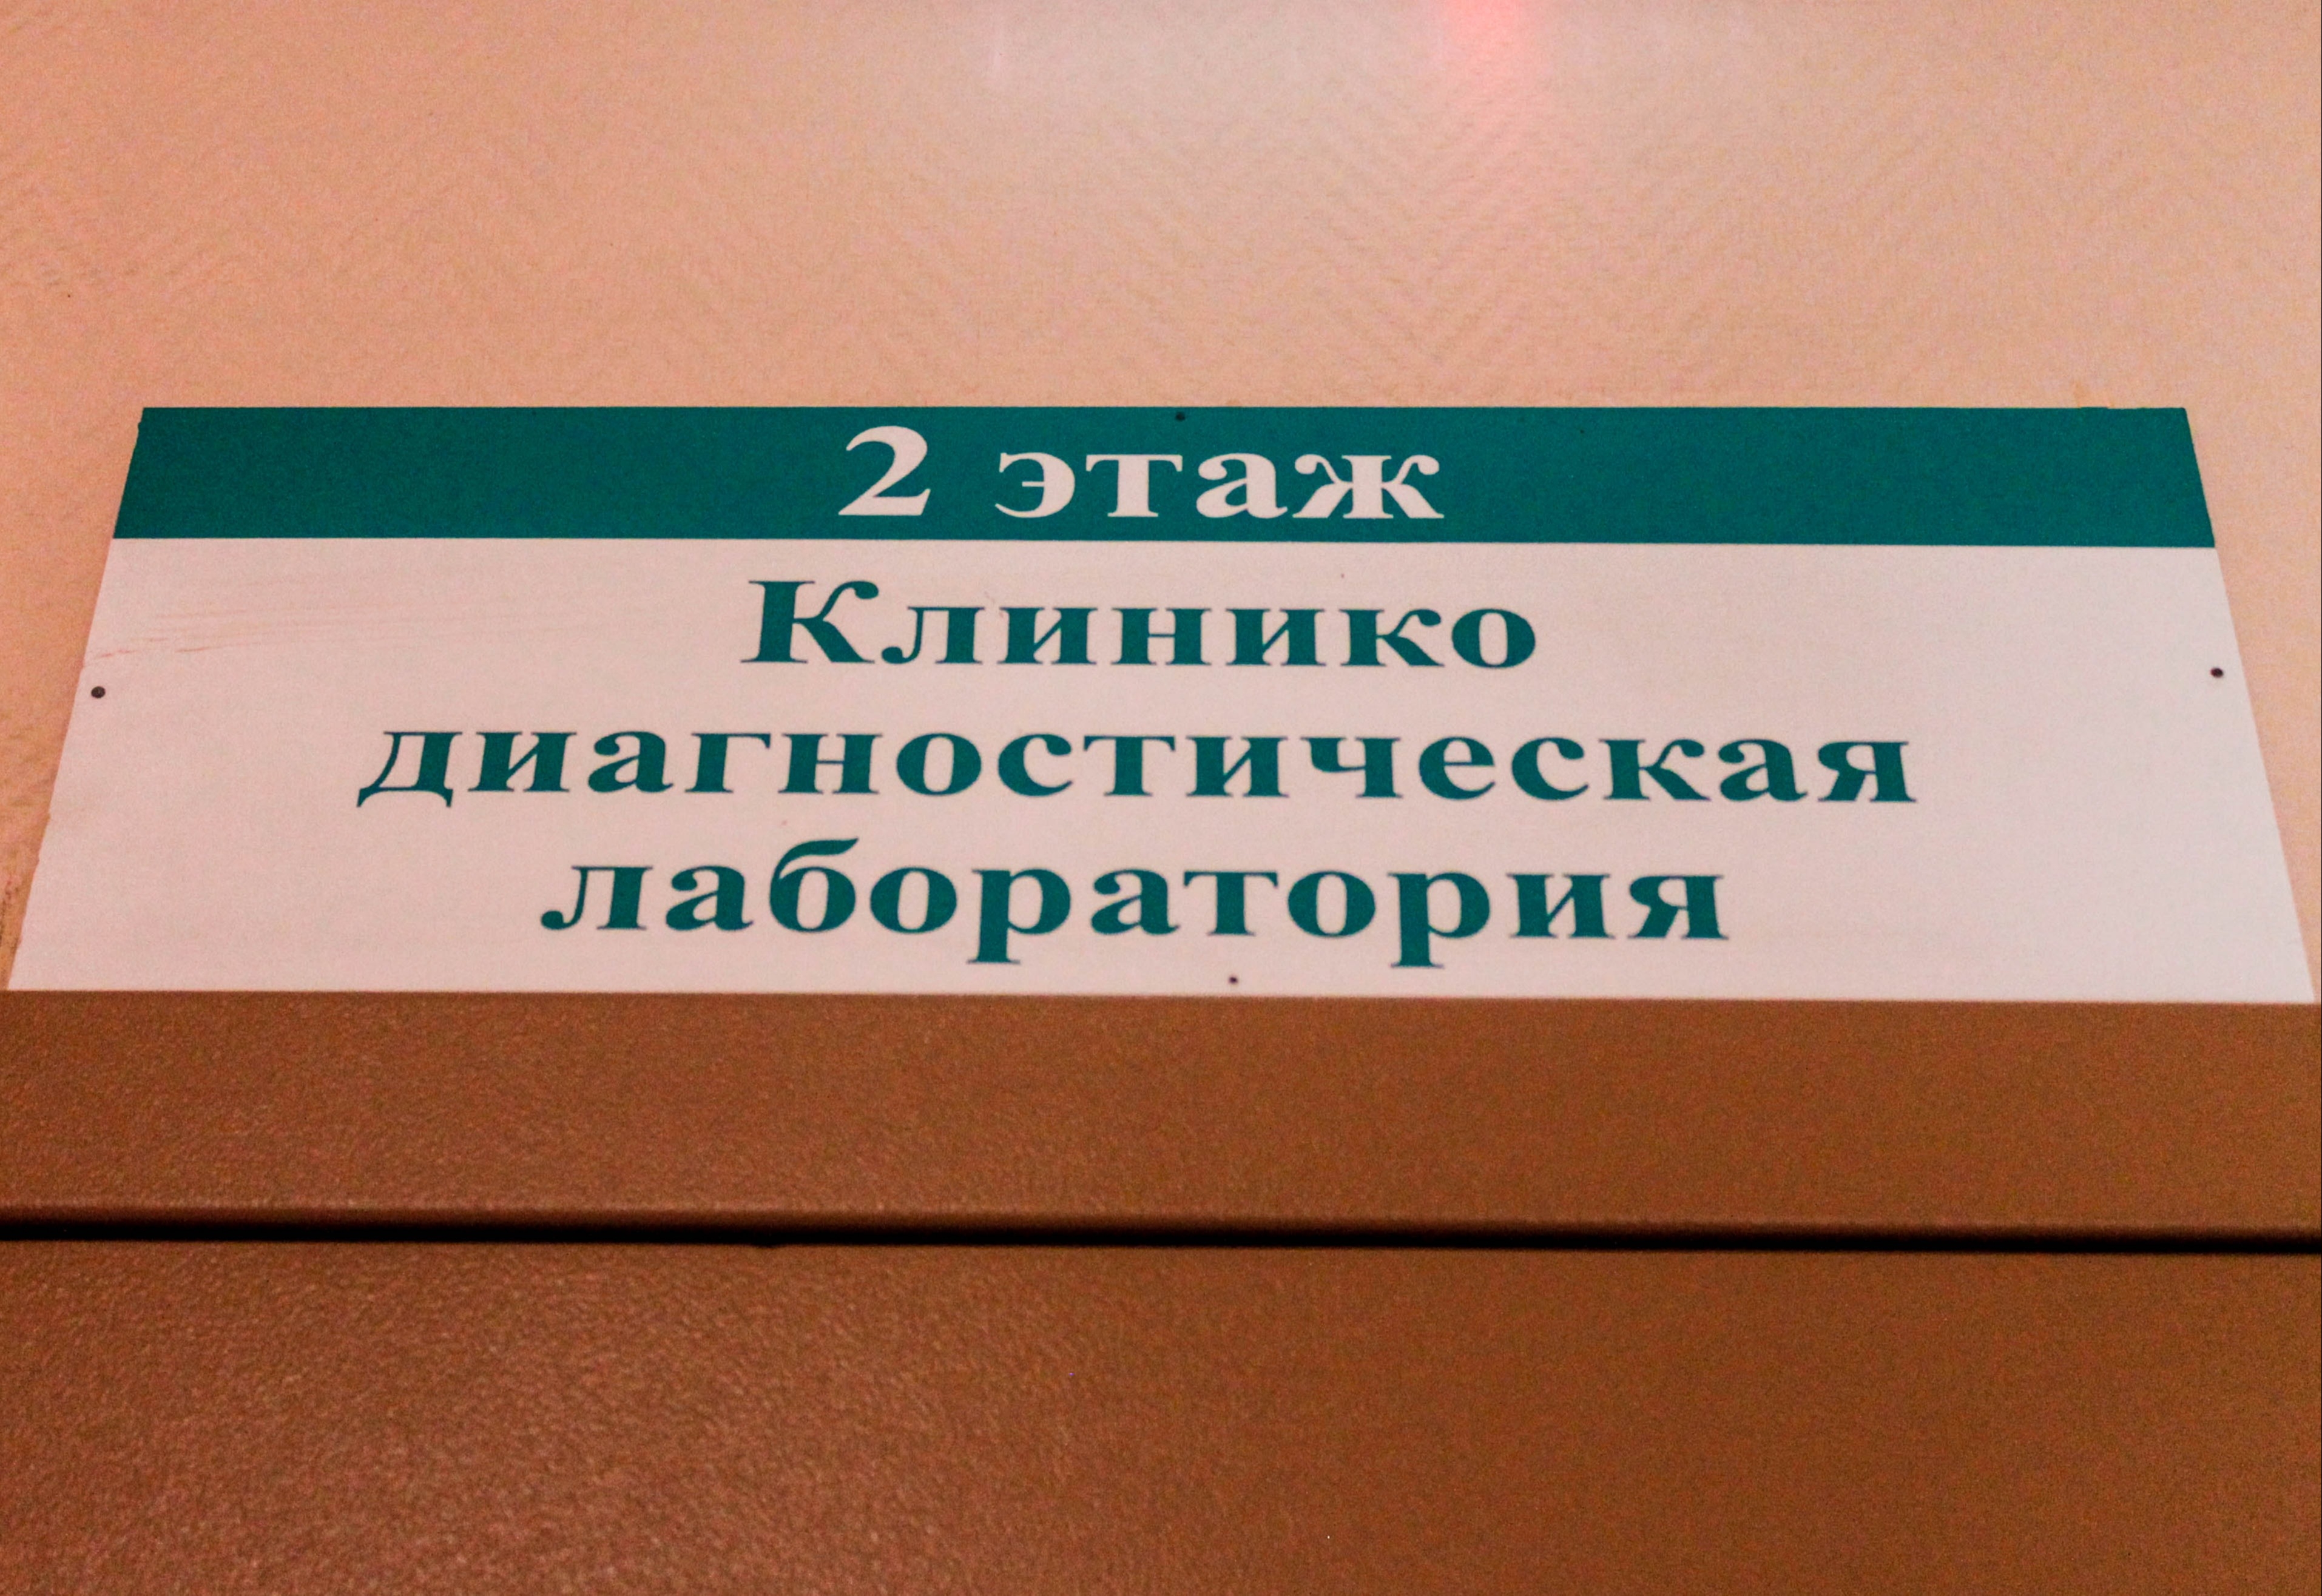 За две недели в РФ не зафиксировано ни одного случая гриппа - НИИ